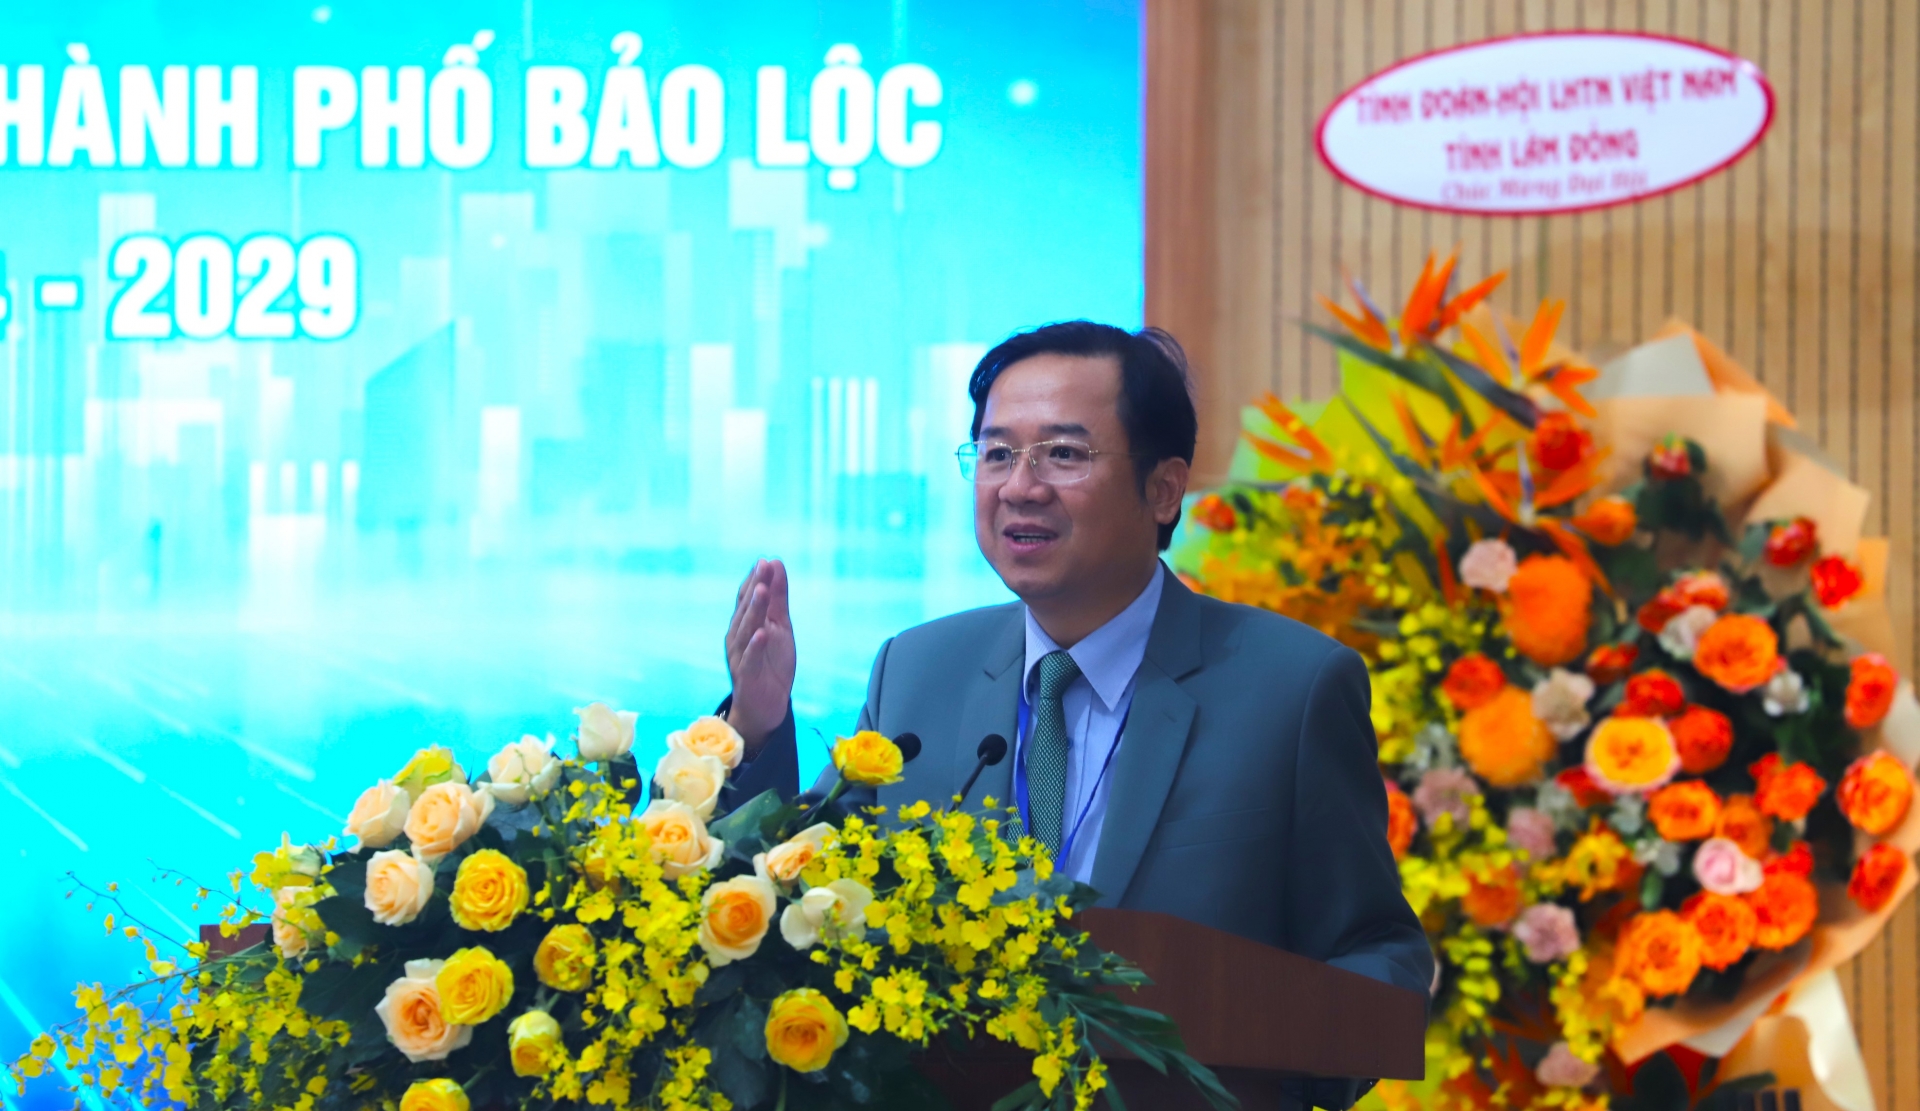 Đồng chí Tôn Thiện Đồng - Ủy viên Ban Thường vụ Tỉnh ủy, Bí thư Thành ủy Bảo Lộc phát biểu chỉ đạo tại Đại hội